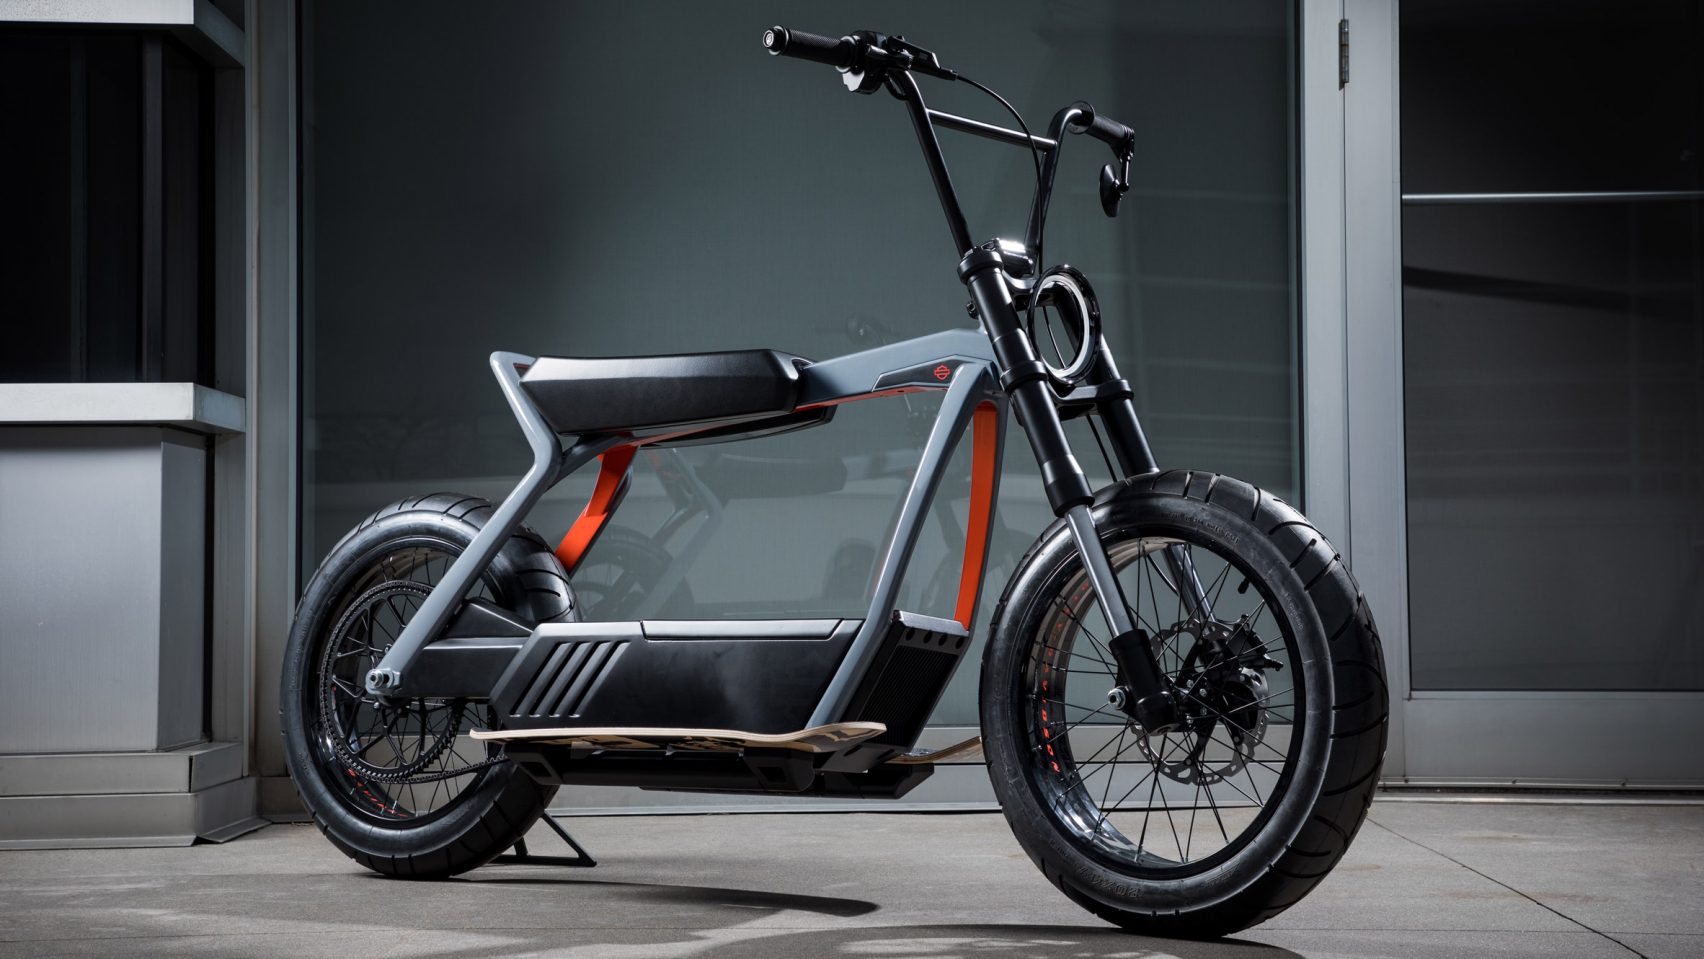 harley-davidson-electric-scooter-concepts-design_dezeen_2364_hero-1-1704x959.jpg